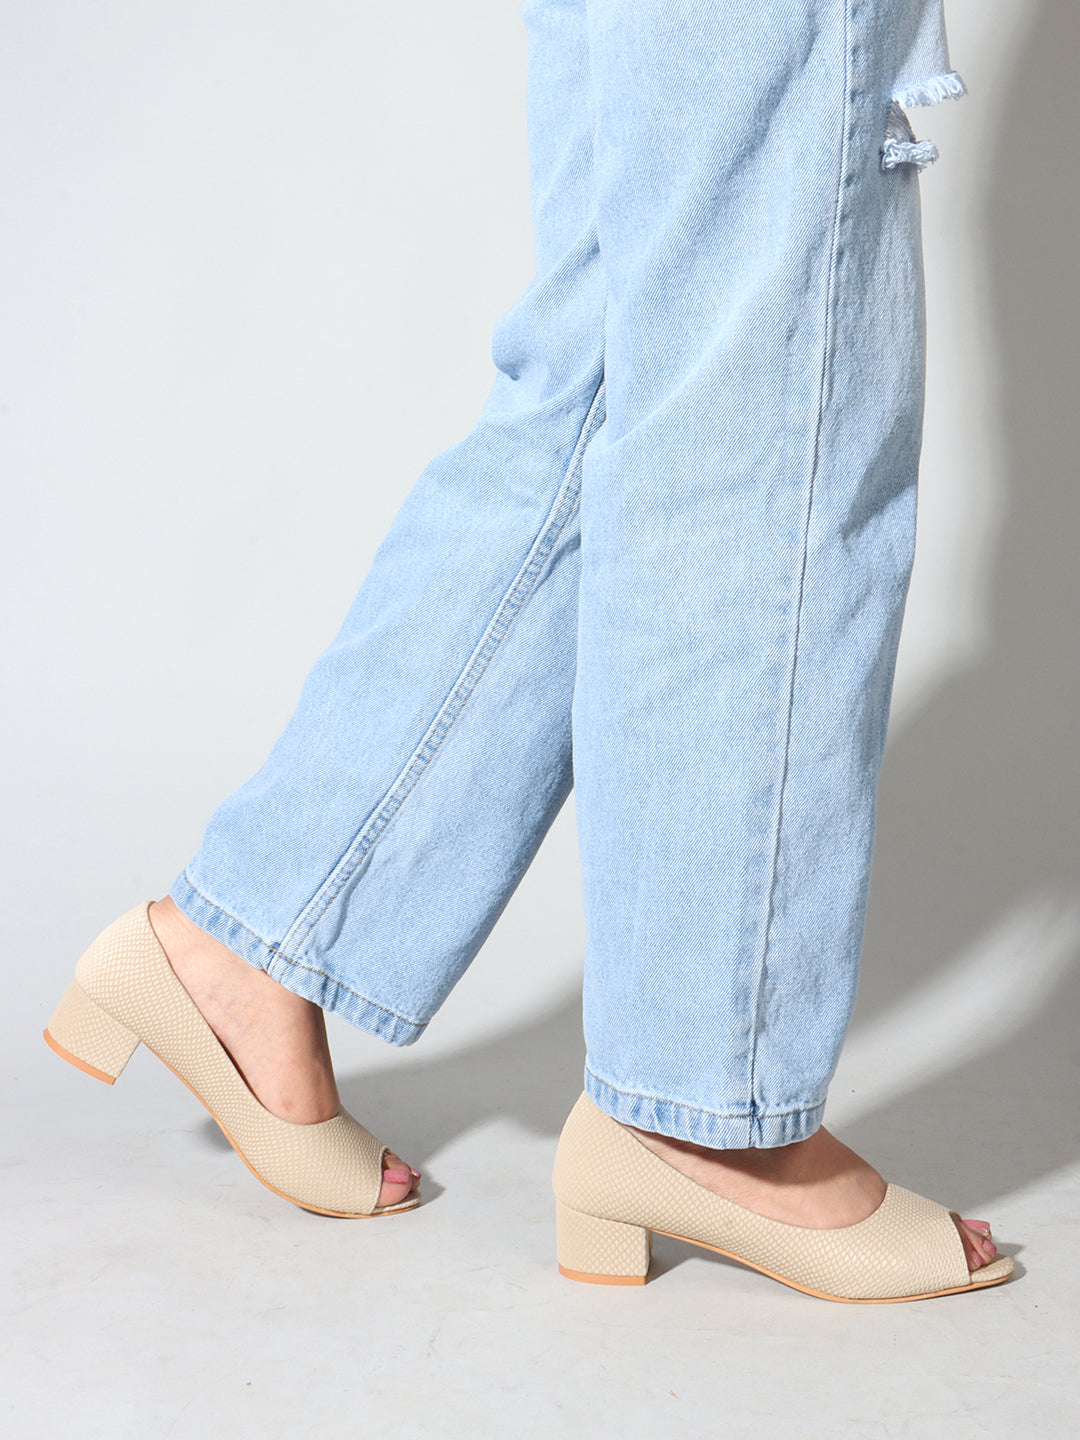 Peep Toe Textured Block Heels for Women